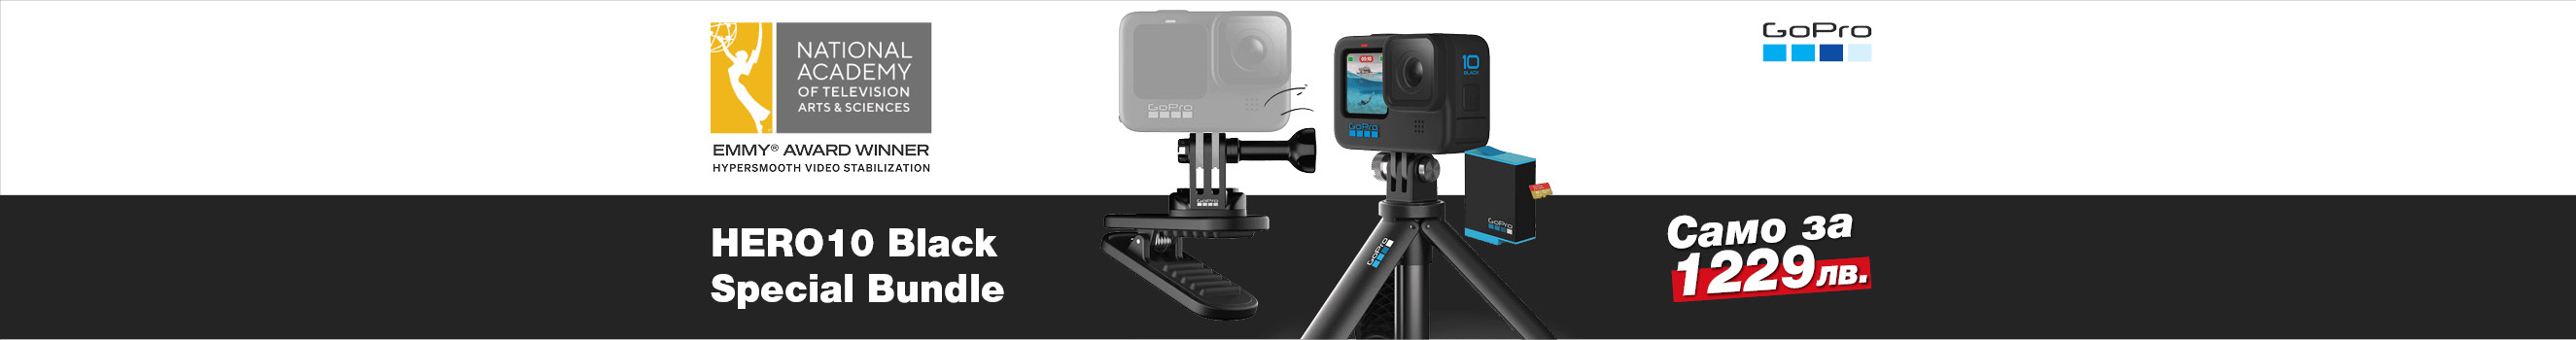 Екшън камера GoPro HERO10 Black Special Bundle на супер цена в магазини ФотоСинтезис 